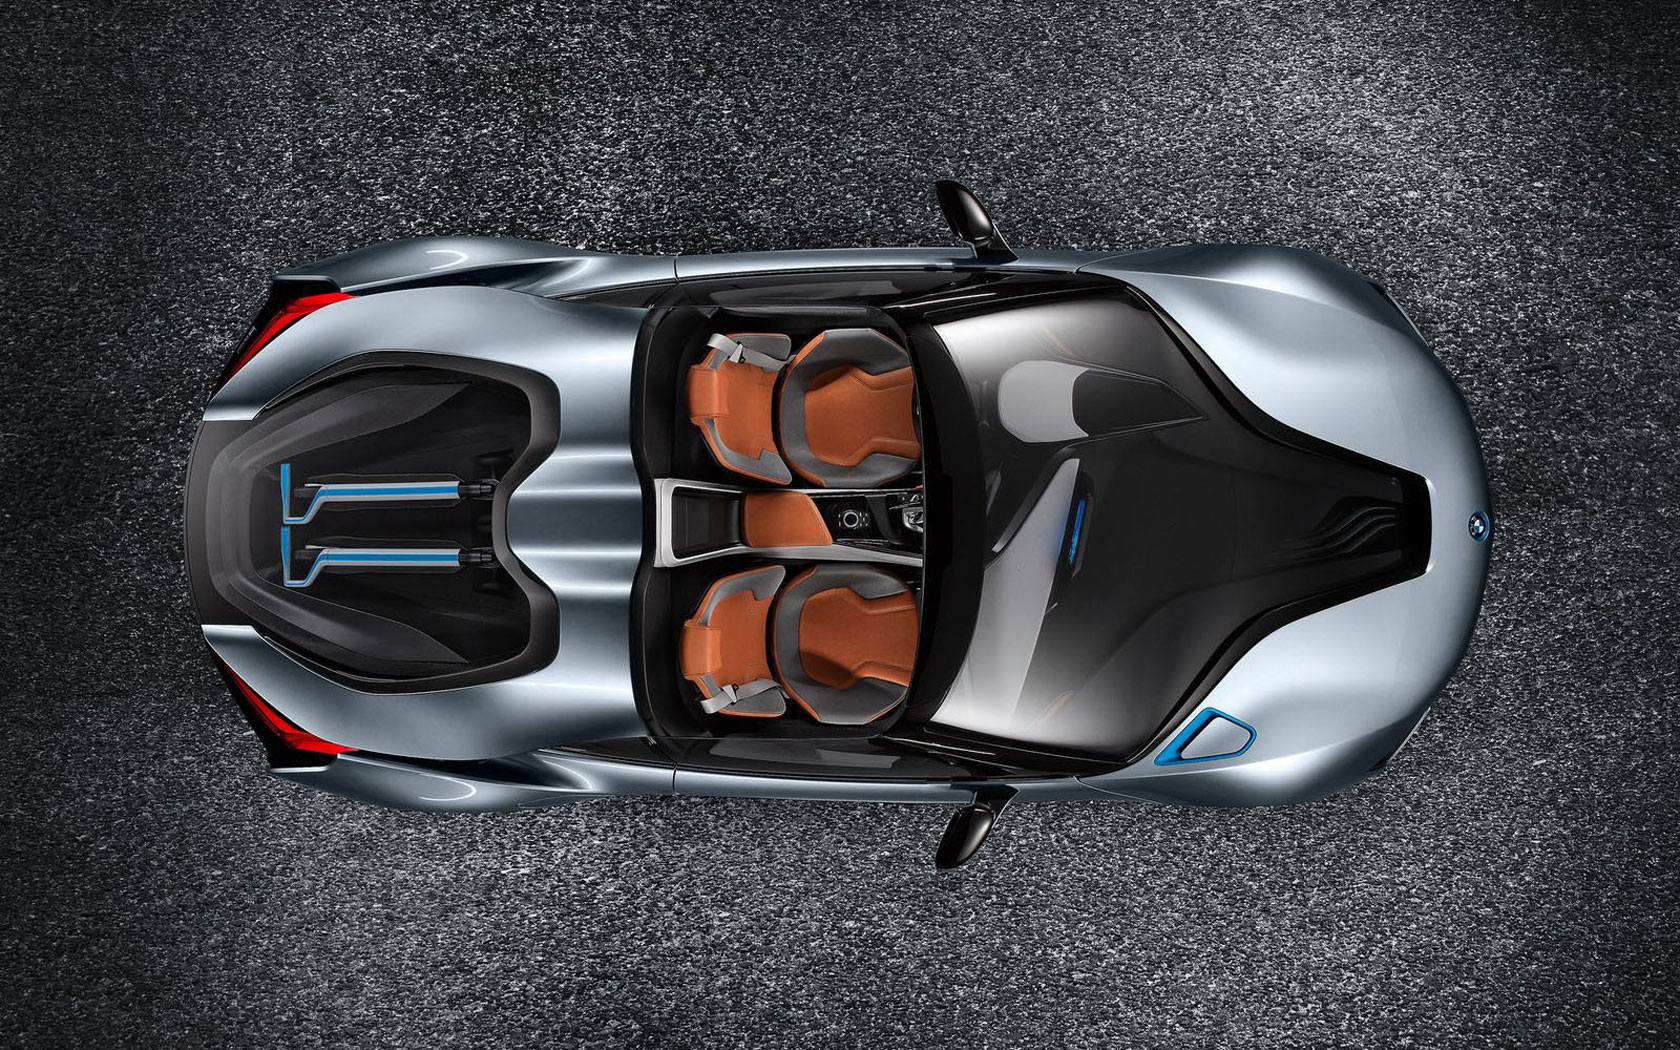  BMW i8 Spyder Concept 